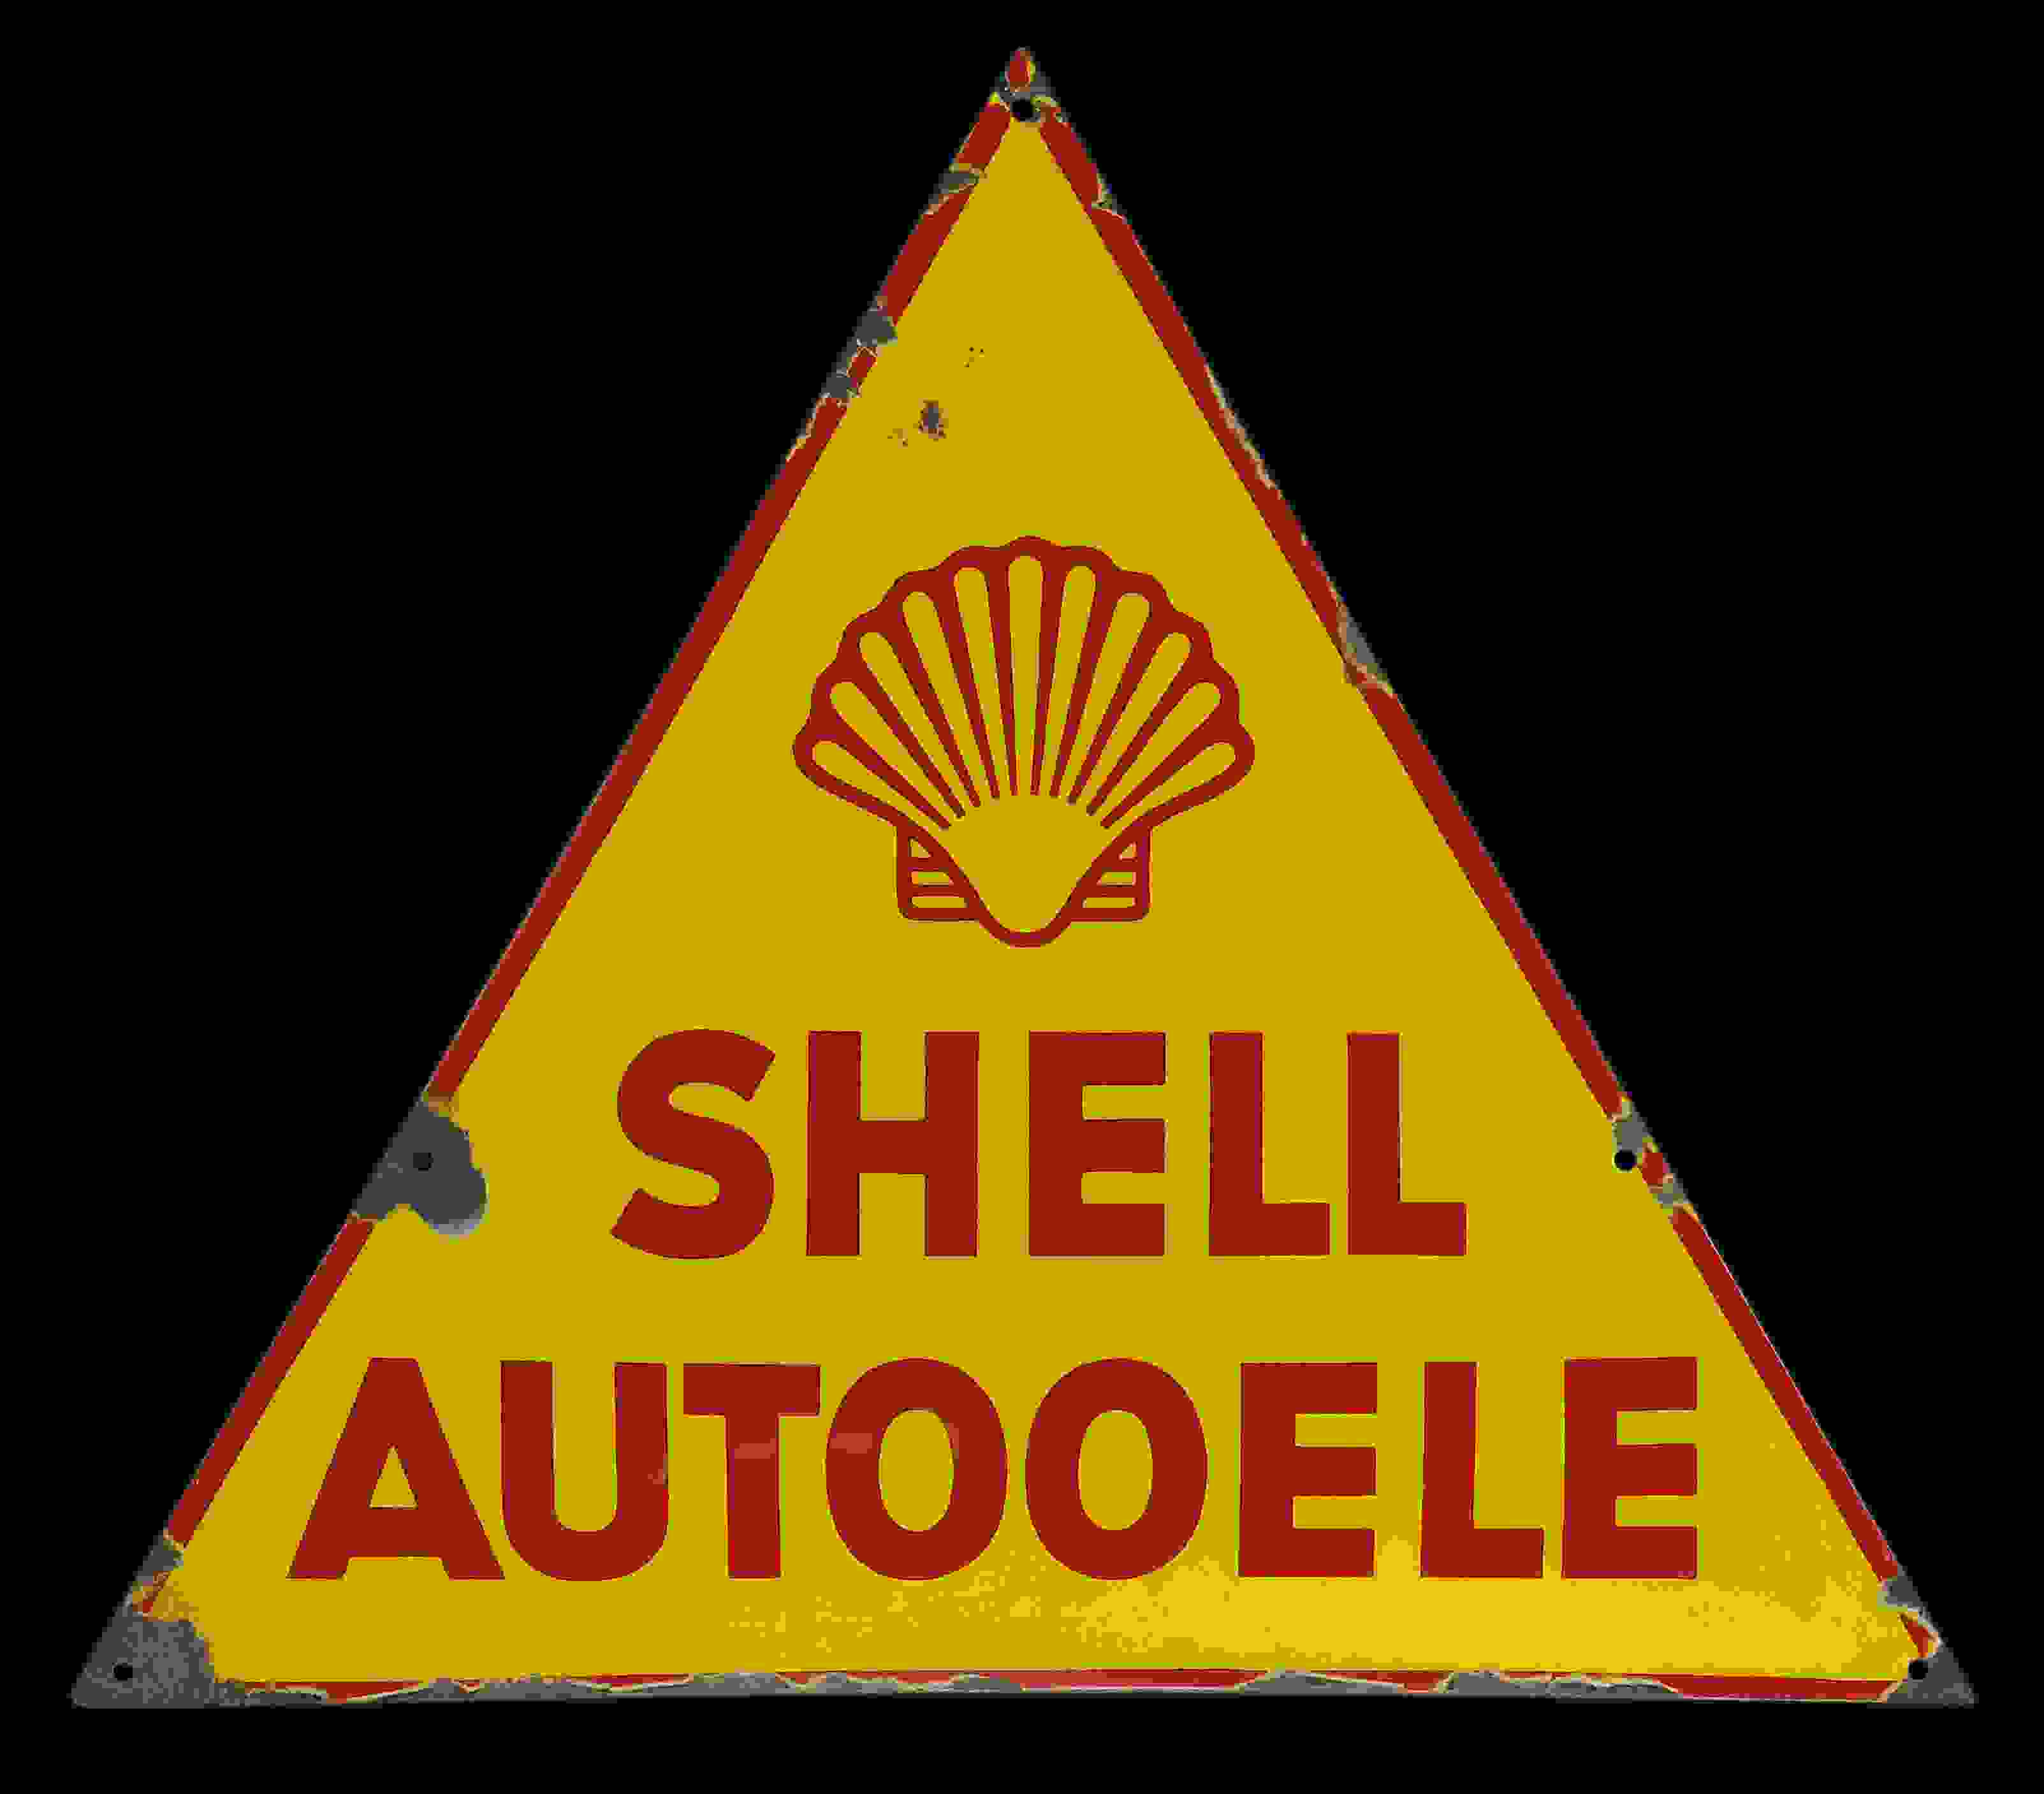 Shell Autooele 